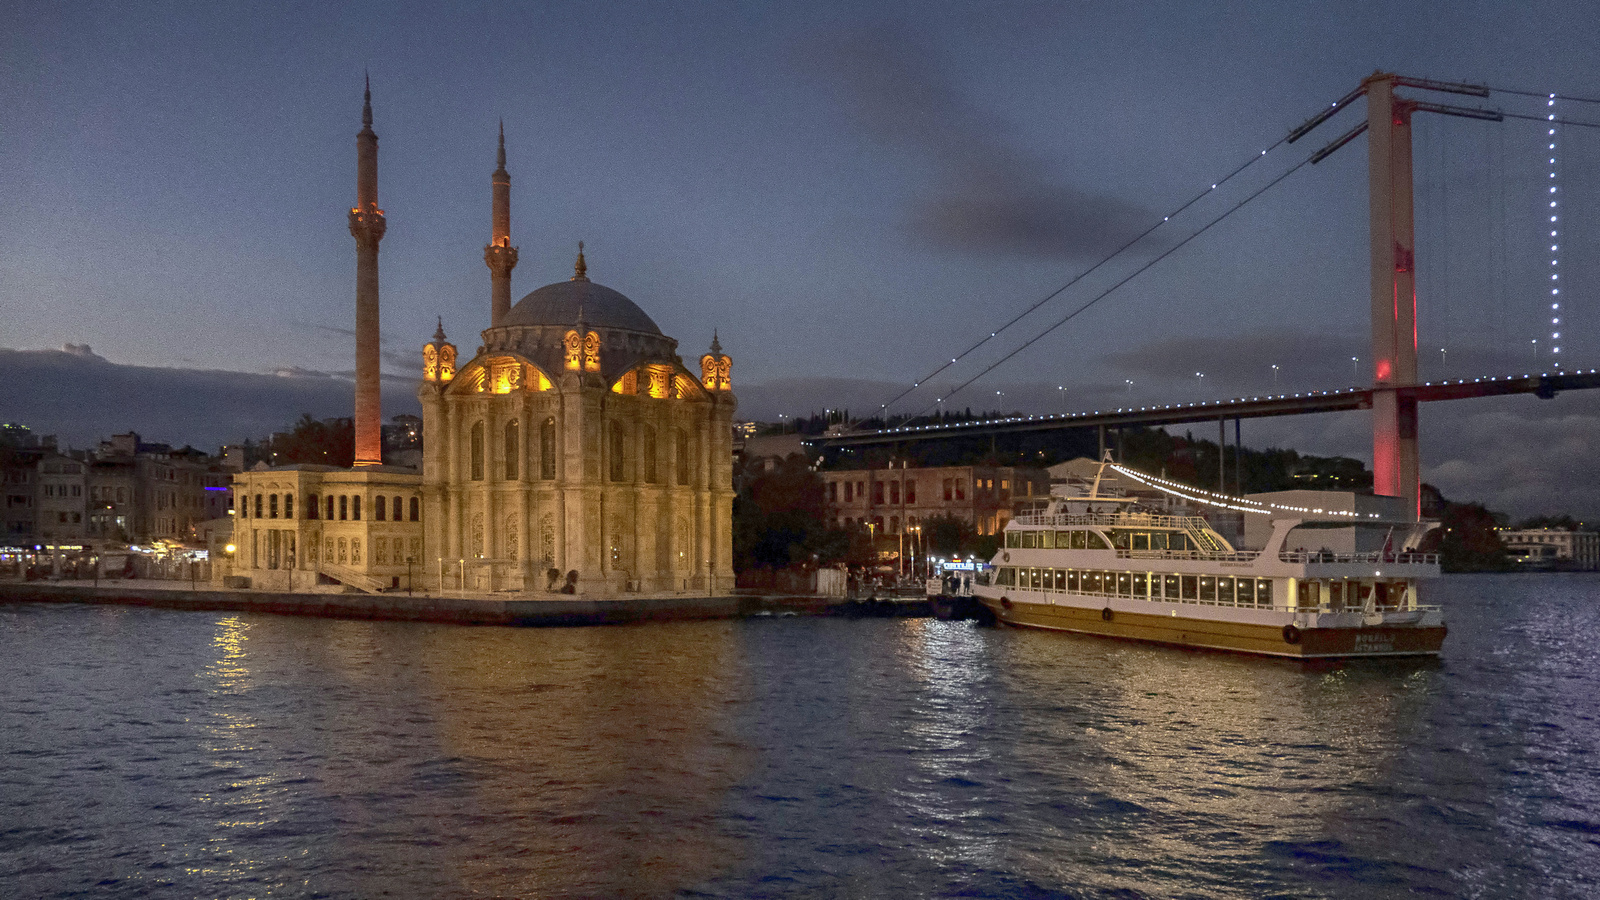 Istanbul - Ortaköy Mosque - Bosphorus Bridge a tenger felől